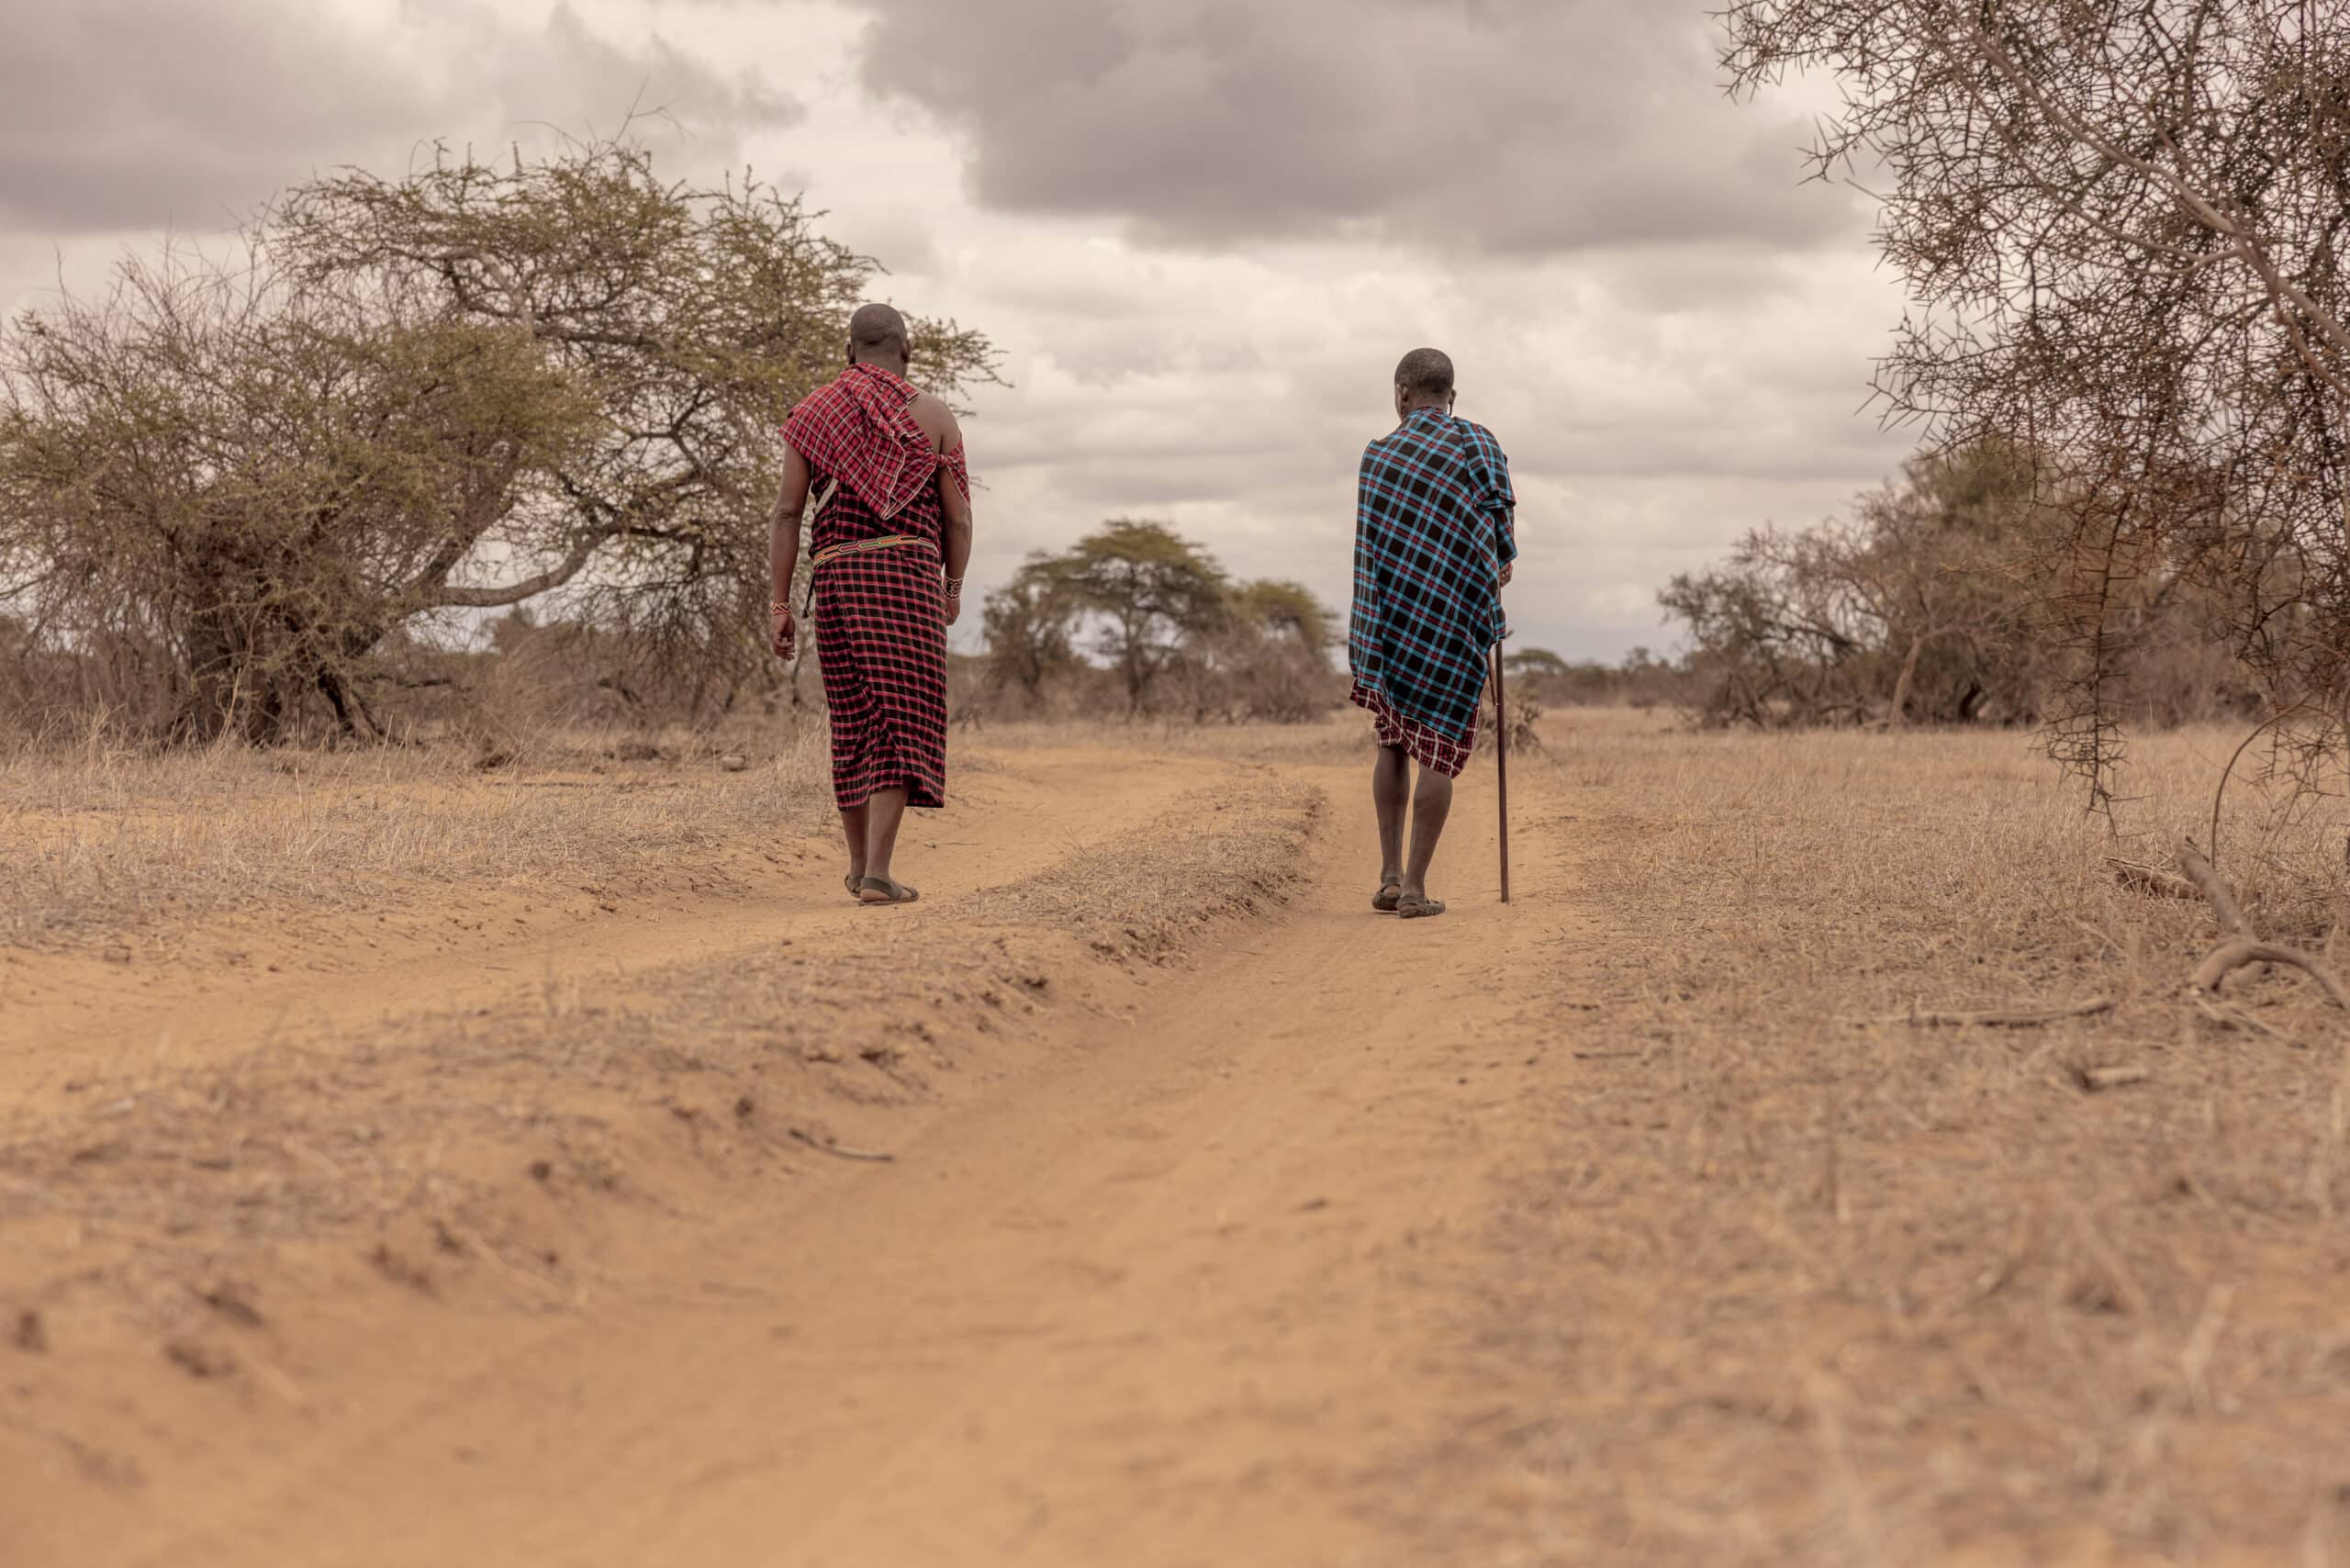 Zwei Massai gehen in traditioneller Kleidung auf einem staubigen Pfad durch eine Savannenlandschaft. Einer trägt einen Spazierstock und der andere blickt abgewandt. © Fotografie Tomas Rodriguez